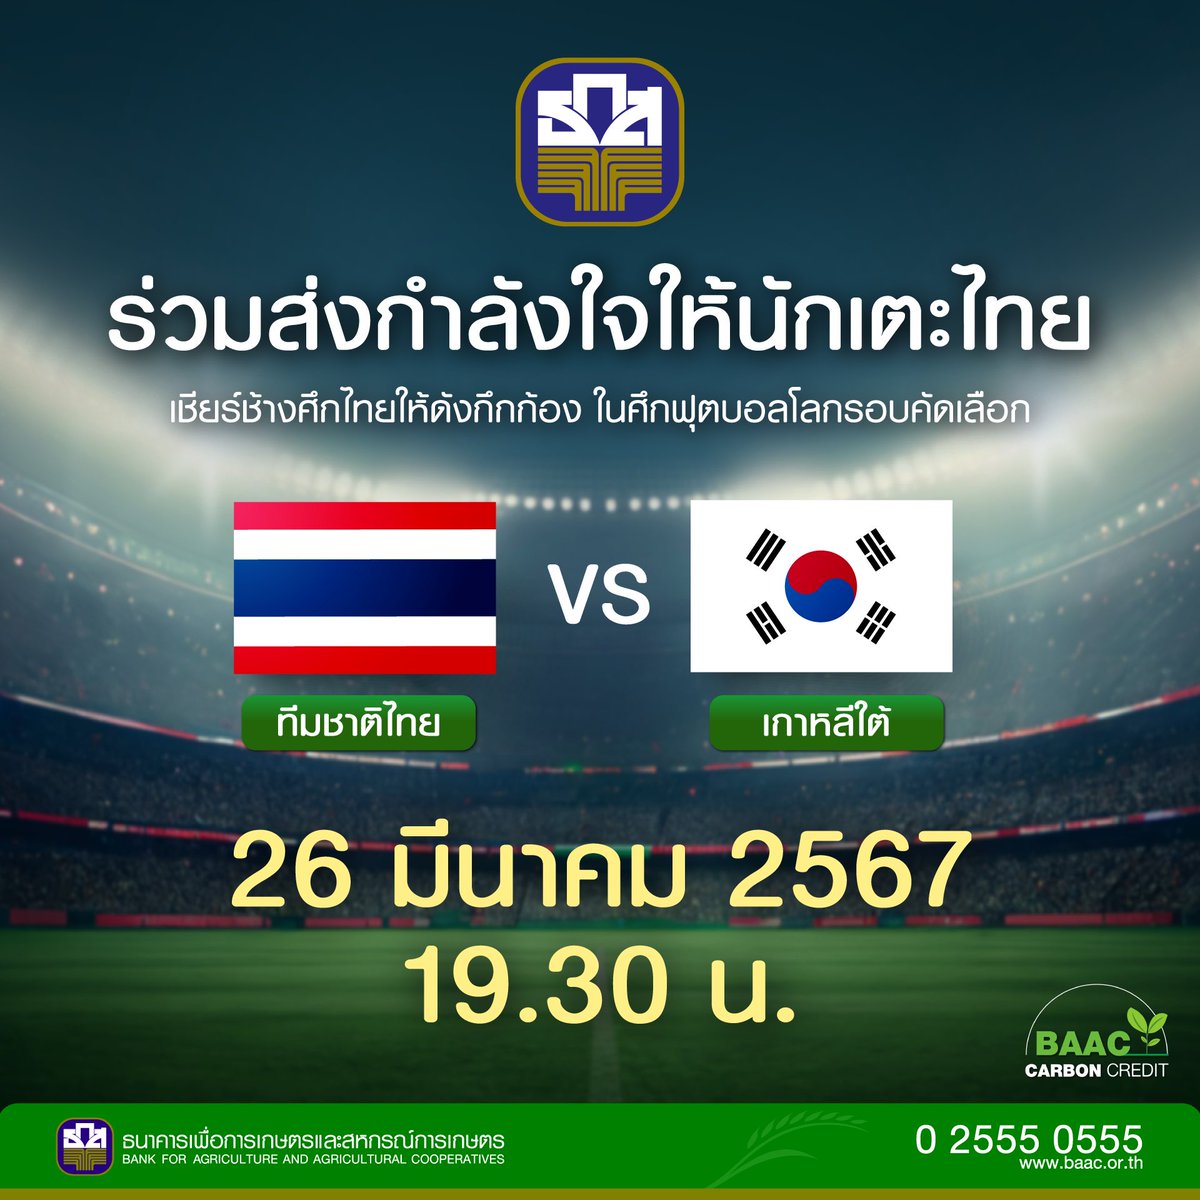 เชียร์สุดใจไทยแลนด์!!!!! ธ.ก.ส. ขอรวมใจเป็นหนึ่ง ส่งแรงใจเชียร์ทัพ ‘ช้างศึก’ ทีมชาติไทย ในศึกฟุตบอลโลก 2026 รอบคัดเลือก 🏟️🎉⚽️ 🇹🇭 ช้างศึก vs เกาหลีใต้ 🇰🇷 26 มีนาคมนี้ เวลา 19.30 น. ณ สนามราชมังคลากีฬาสถาน #บอลไทย #ช้างศึก #บอลไทยเกาหลี